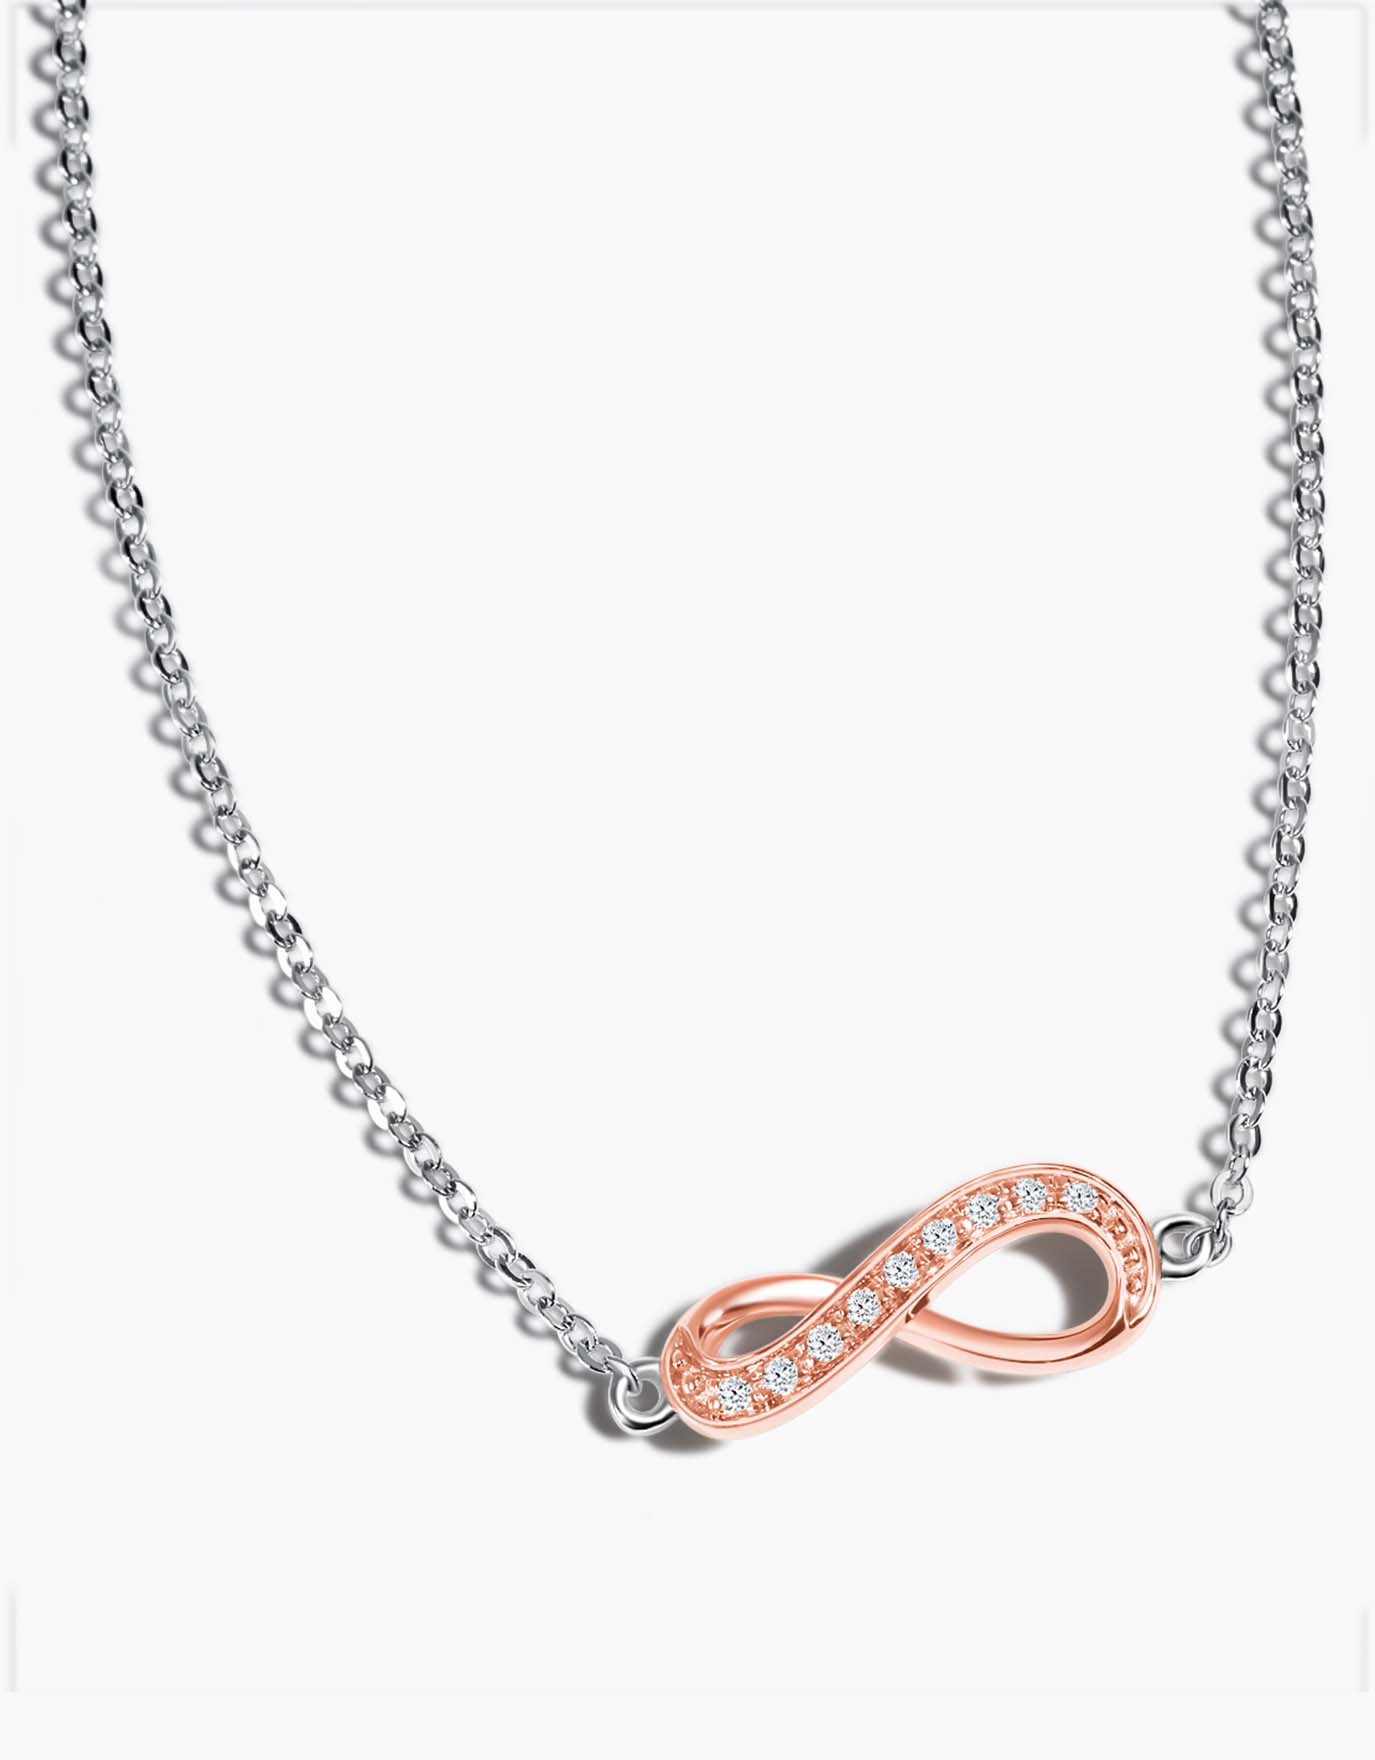 LVC Destiny Infinity Diamond Necklace